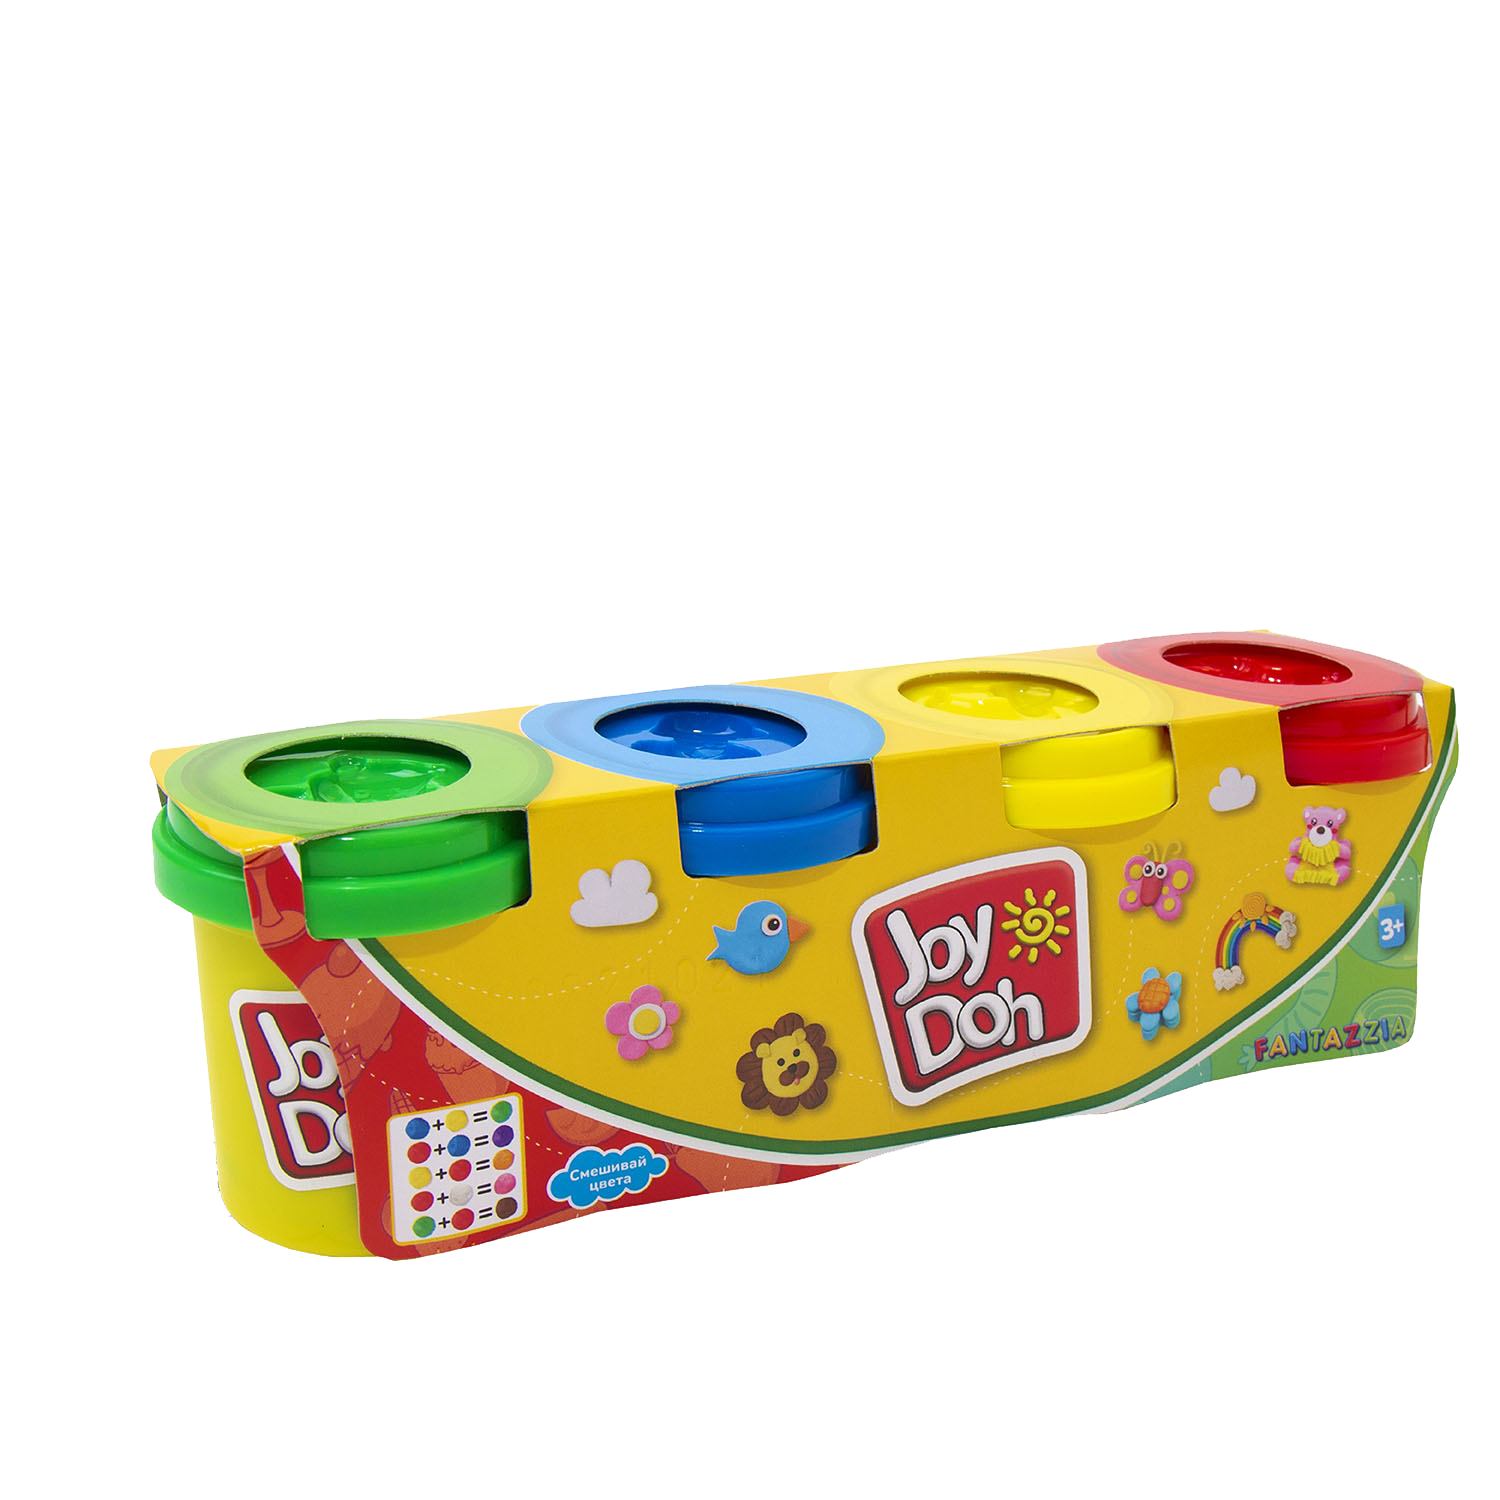 Масса для лепки Joy-Doh, набор из 4 баночек 56г